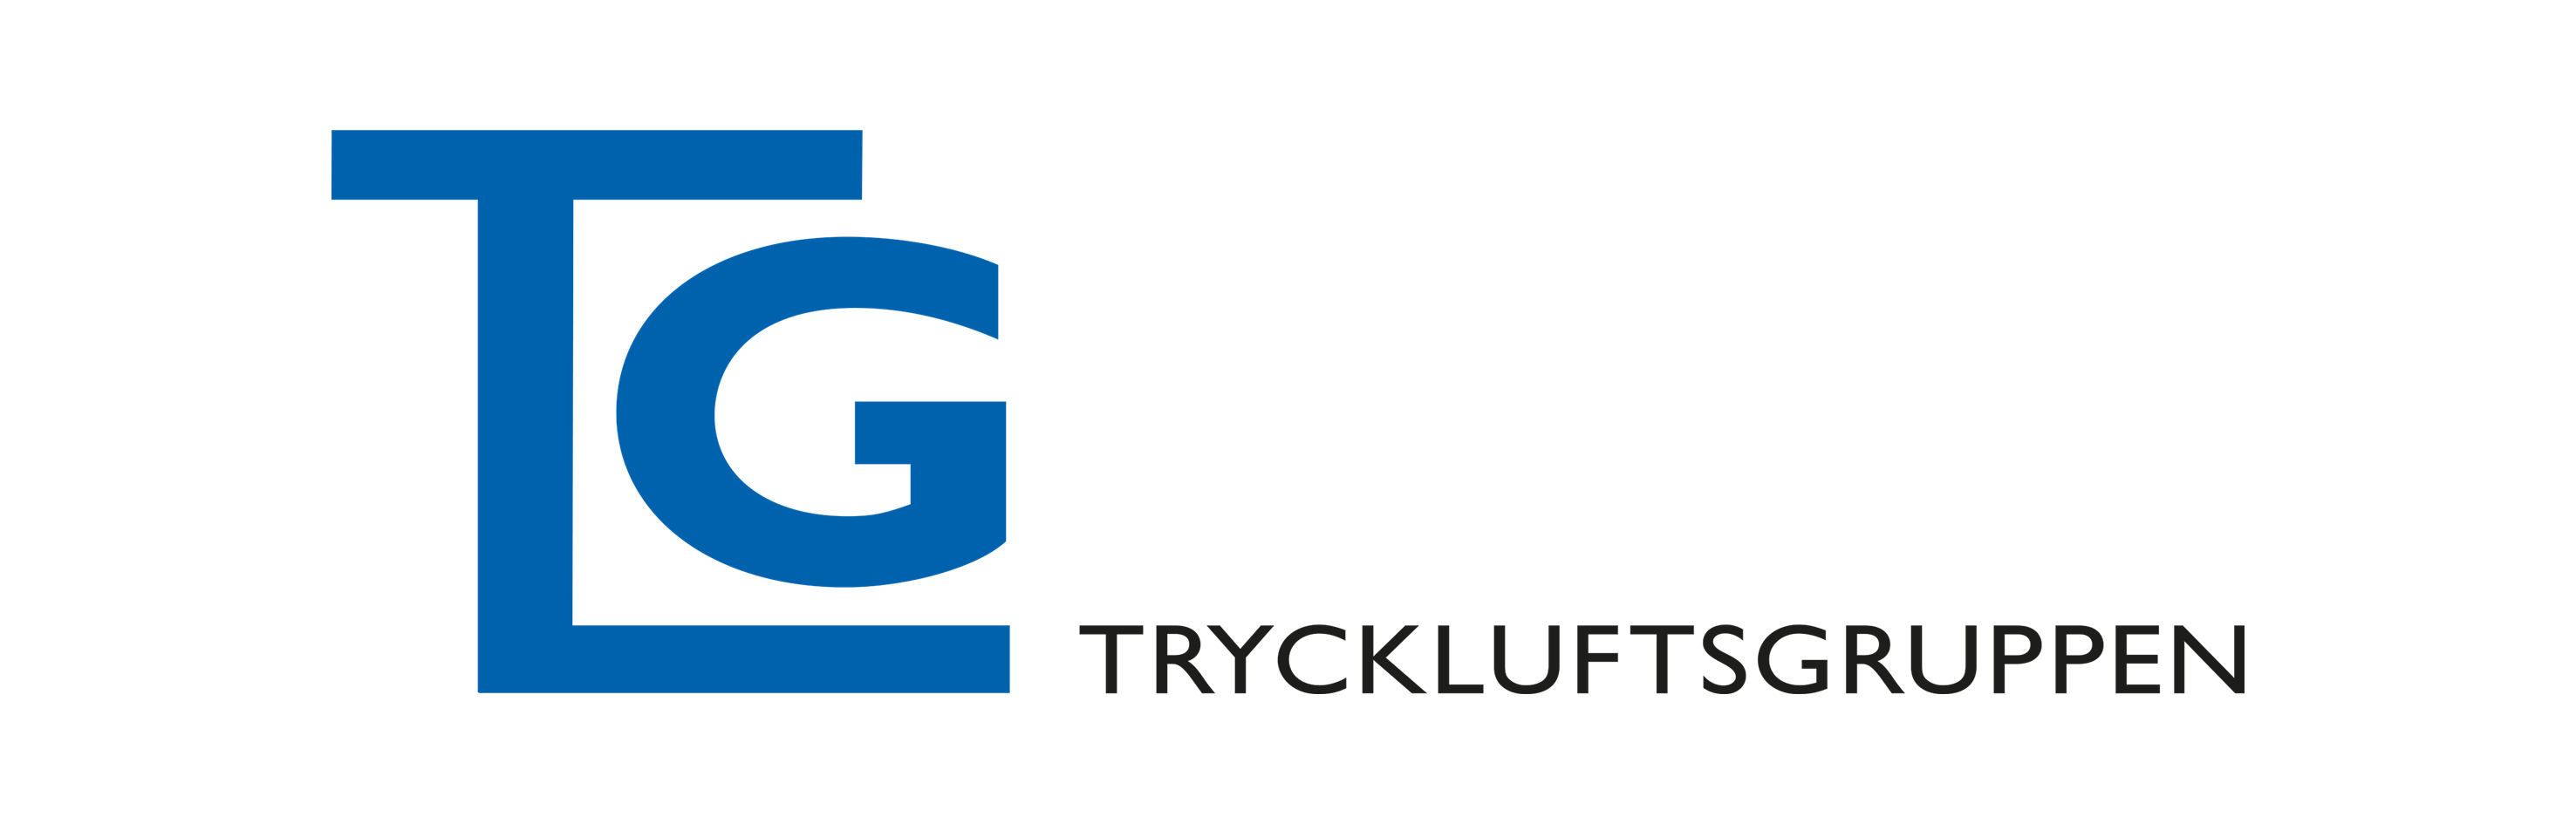 Sweden – Tryckluftsgruppen, TLG